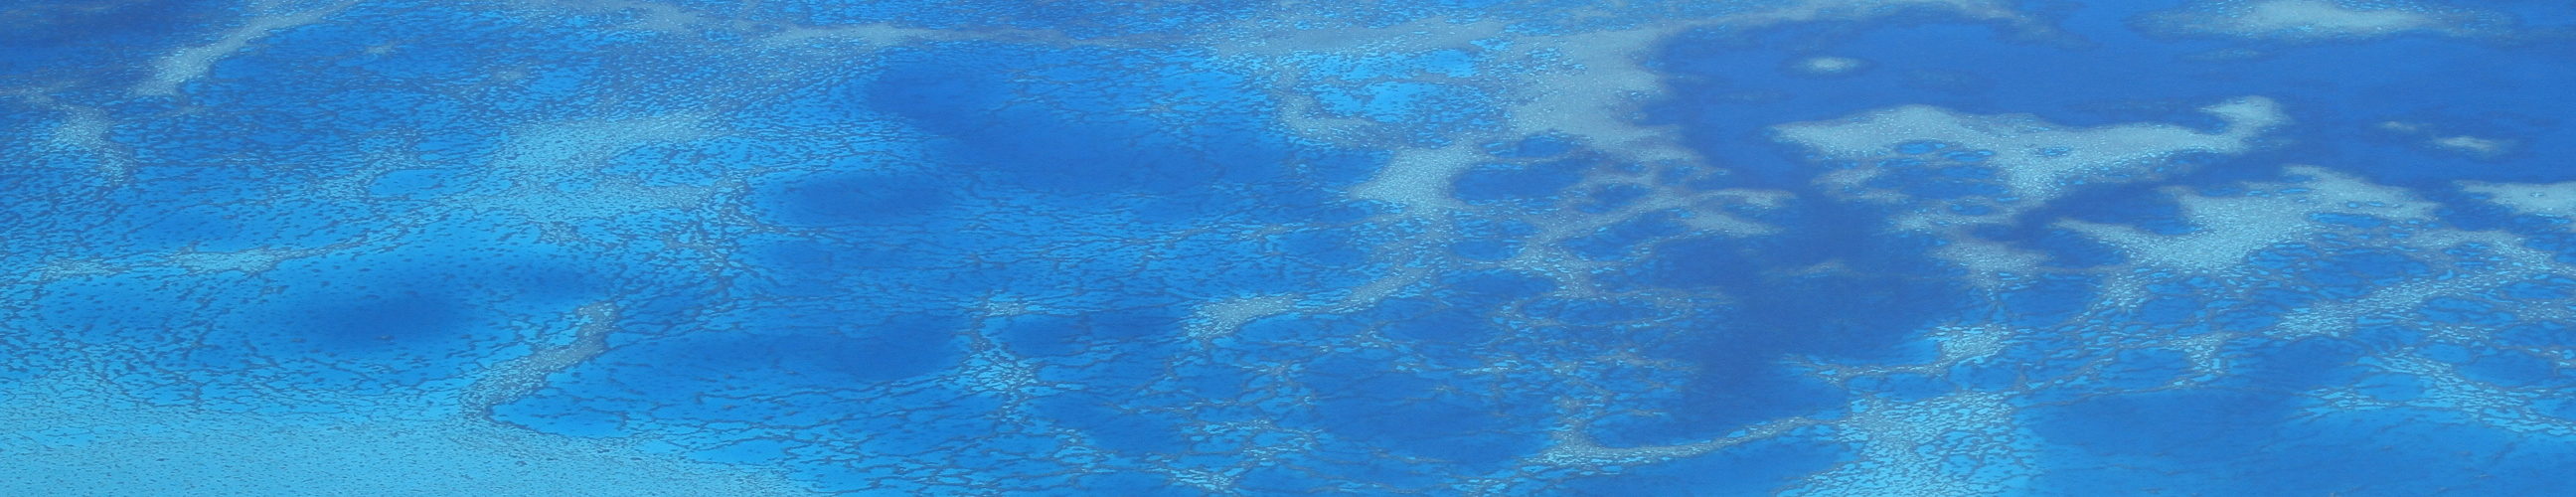 Image bandeau lagon Nouvelle Calédonie